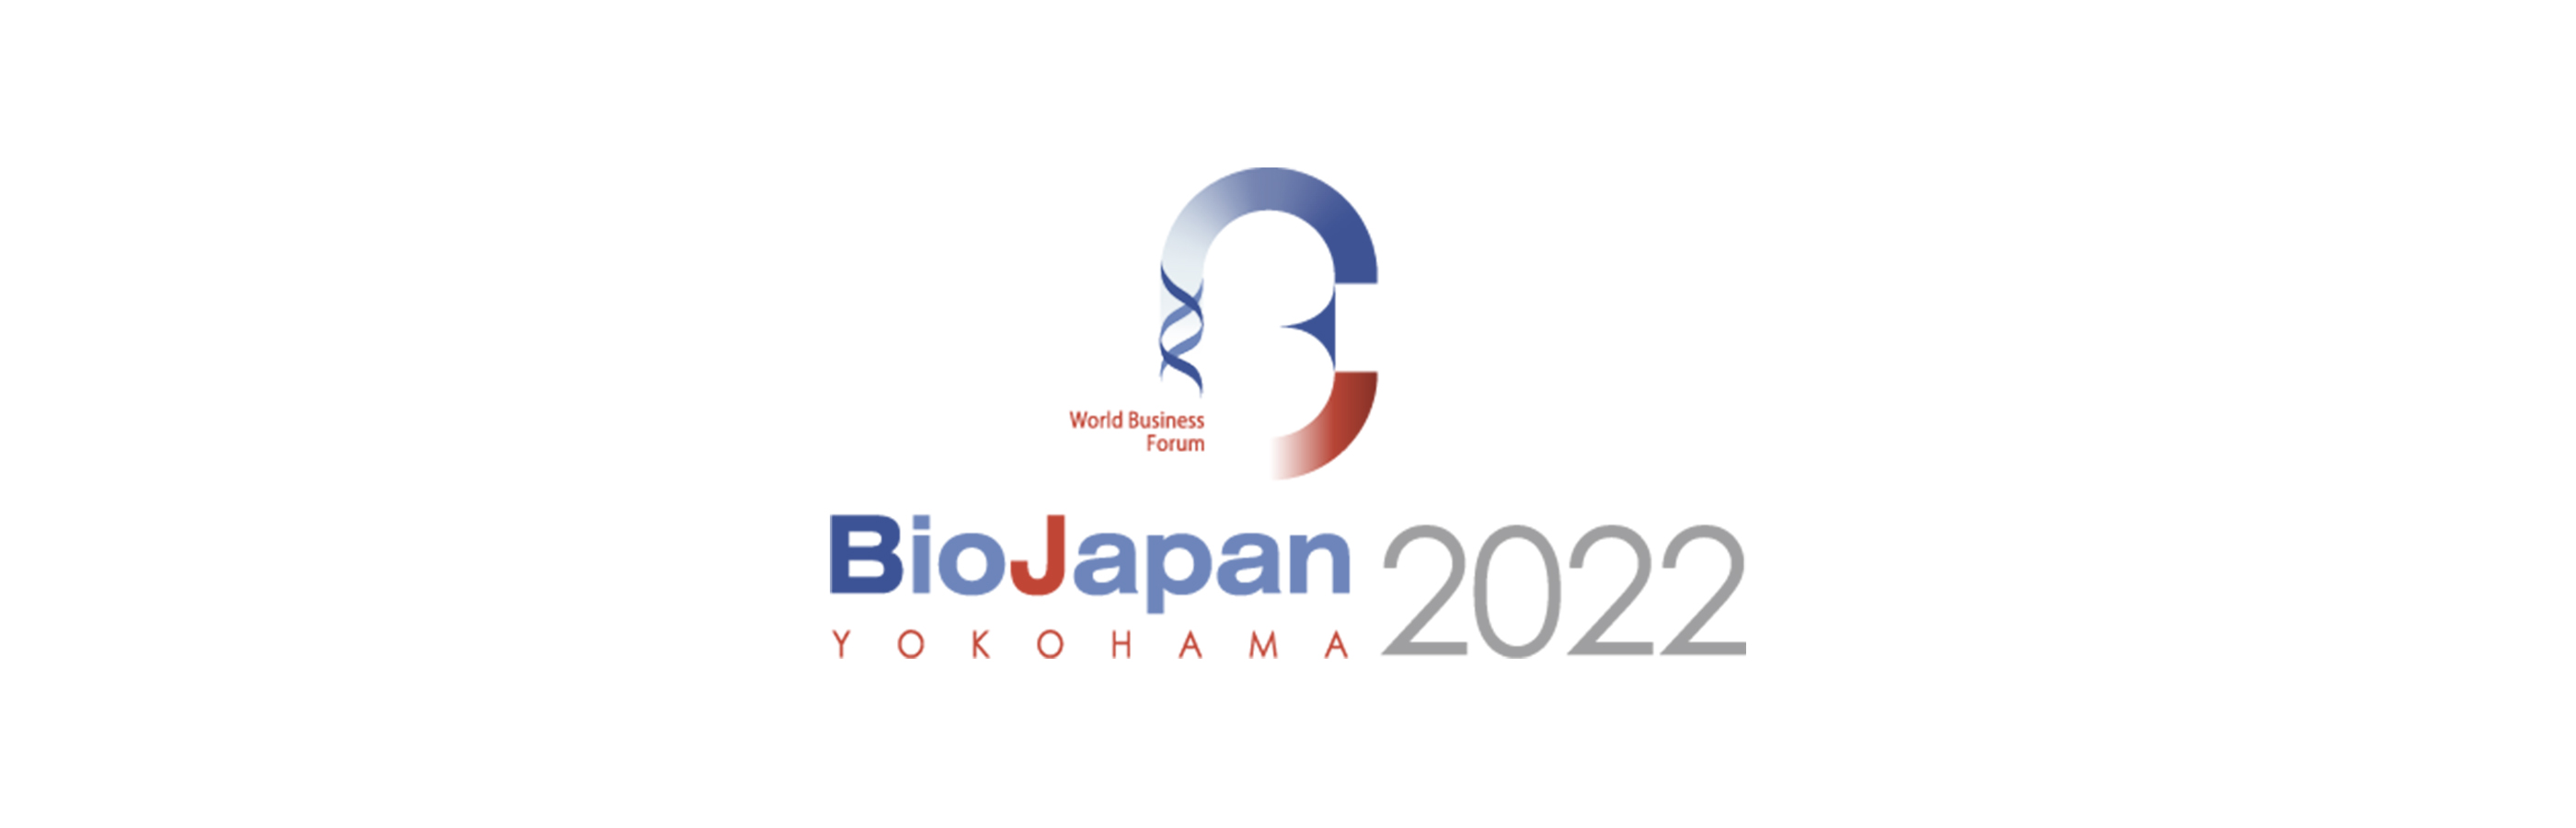 BioJapan 2022